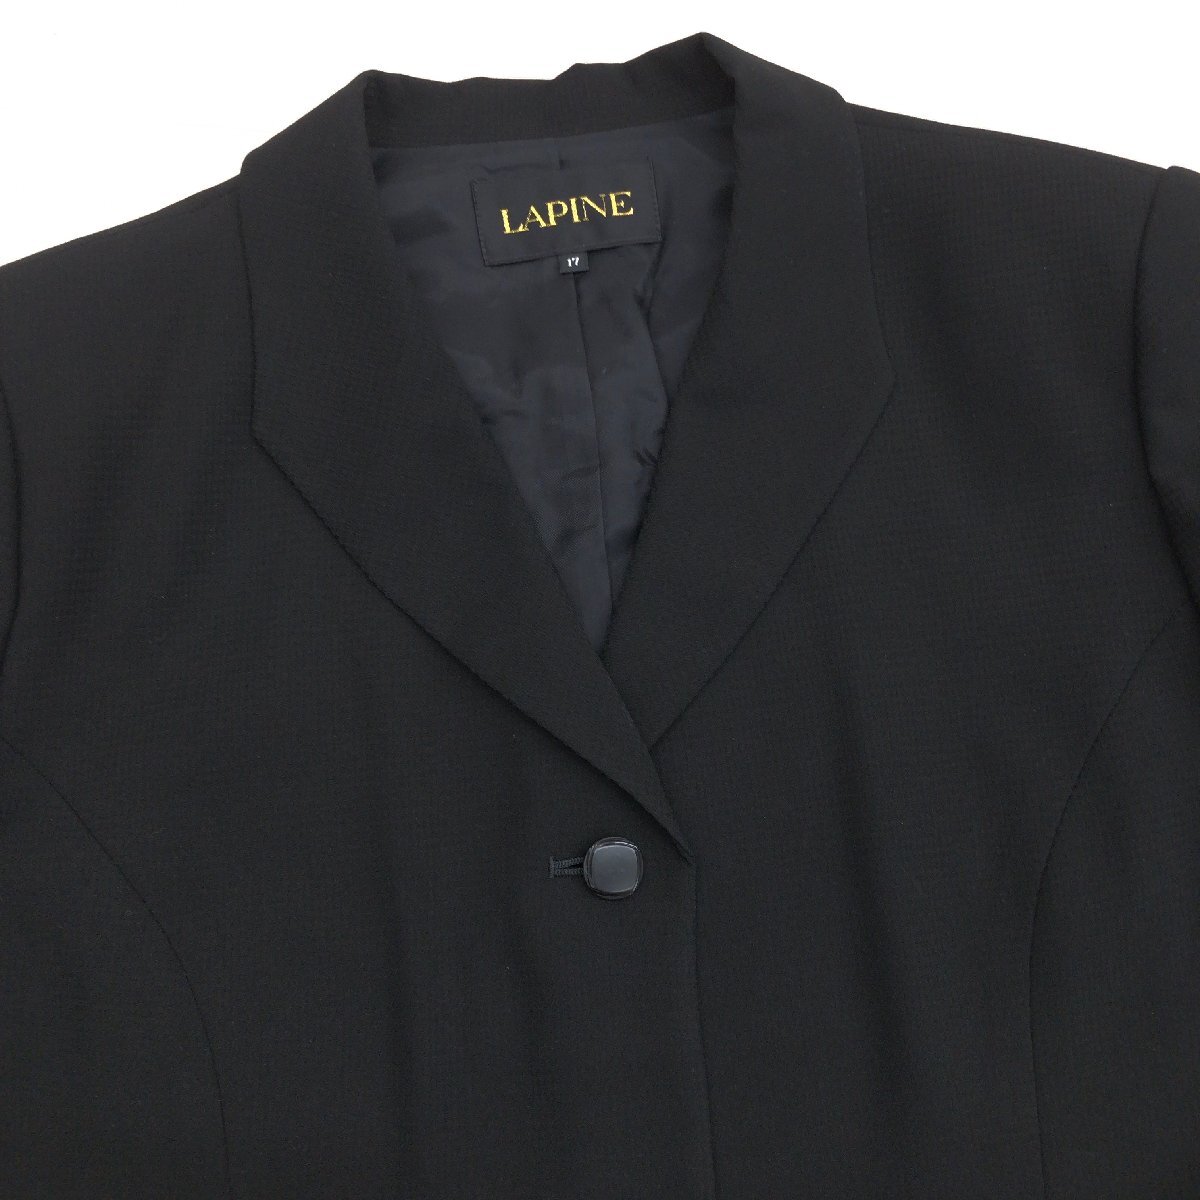 ●LAPINE ラピーヌ 3ピース フォーマルスーツ 上下セットアップ 17(3XL) 黒 ブラック ロングスカート ゆったり 大きいサイズ 4L 日本製_画像4